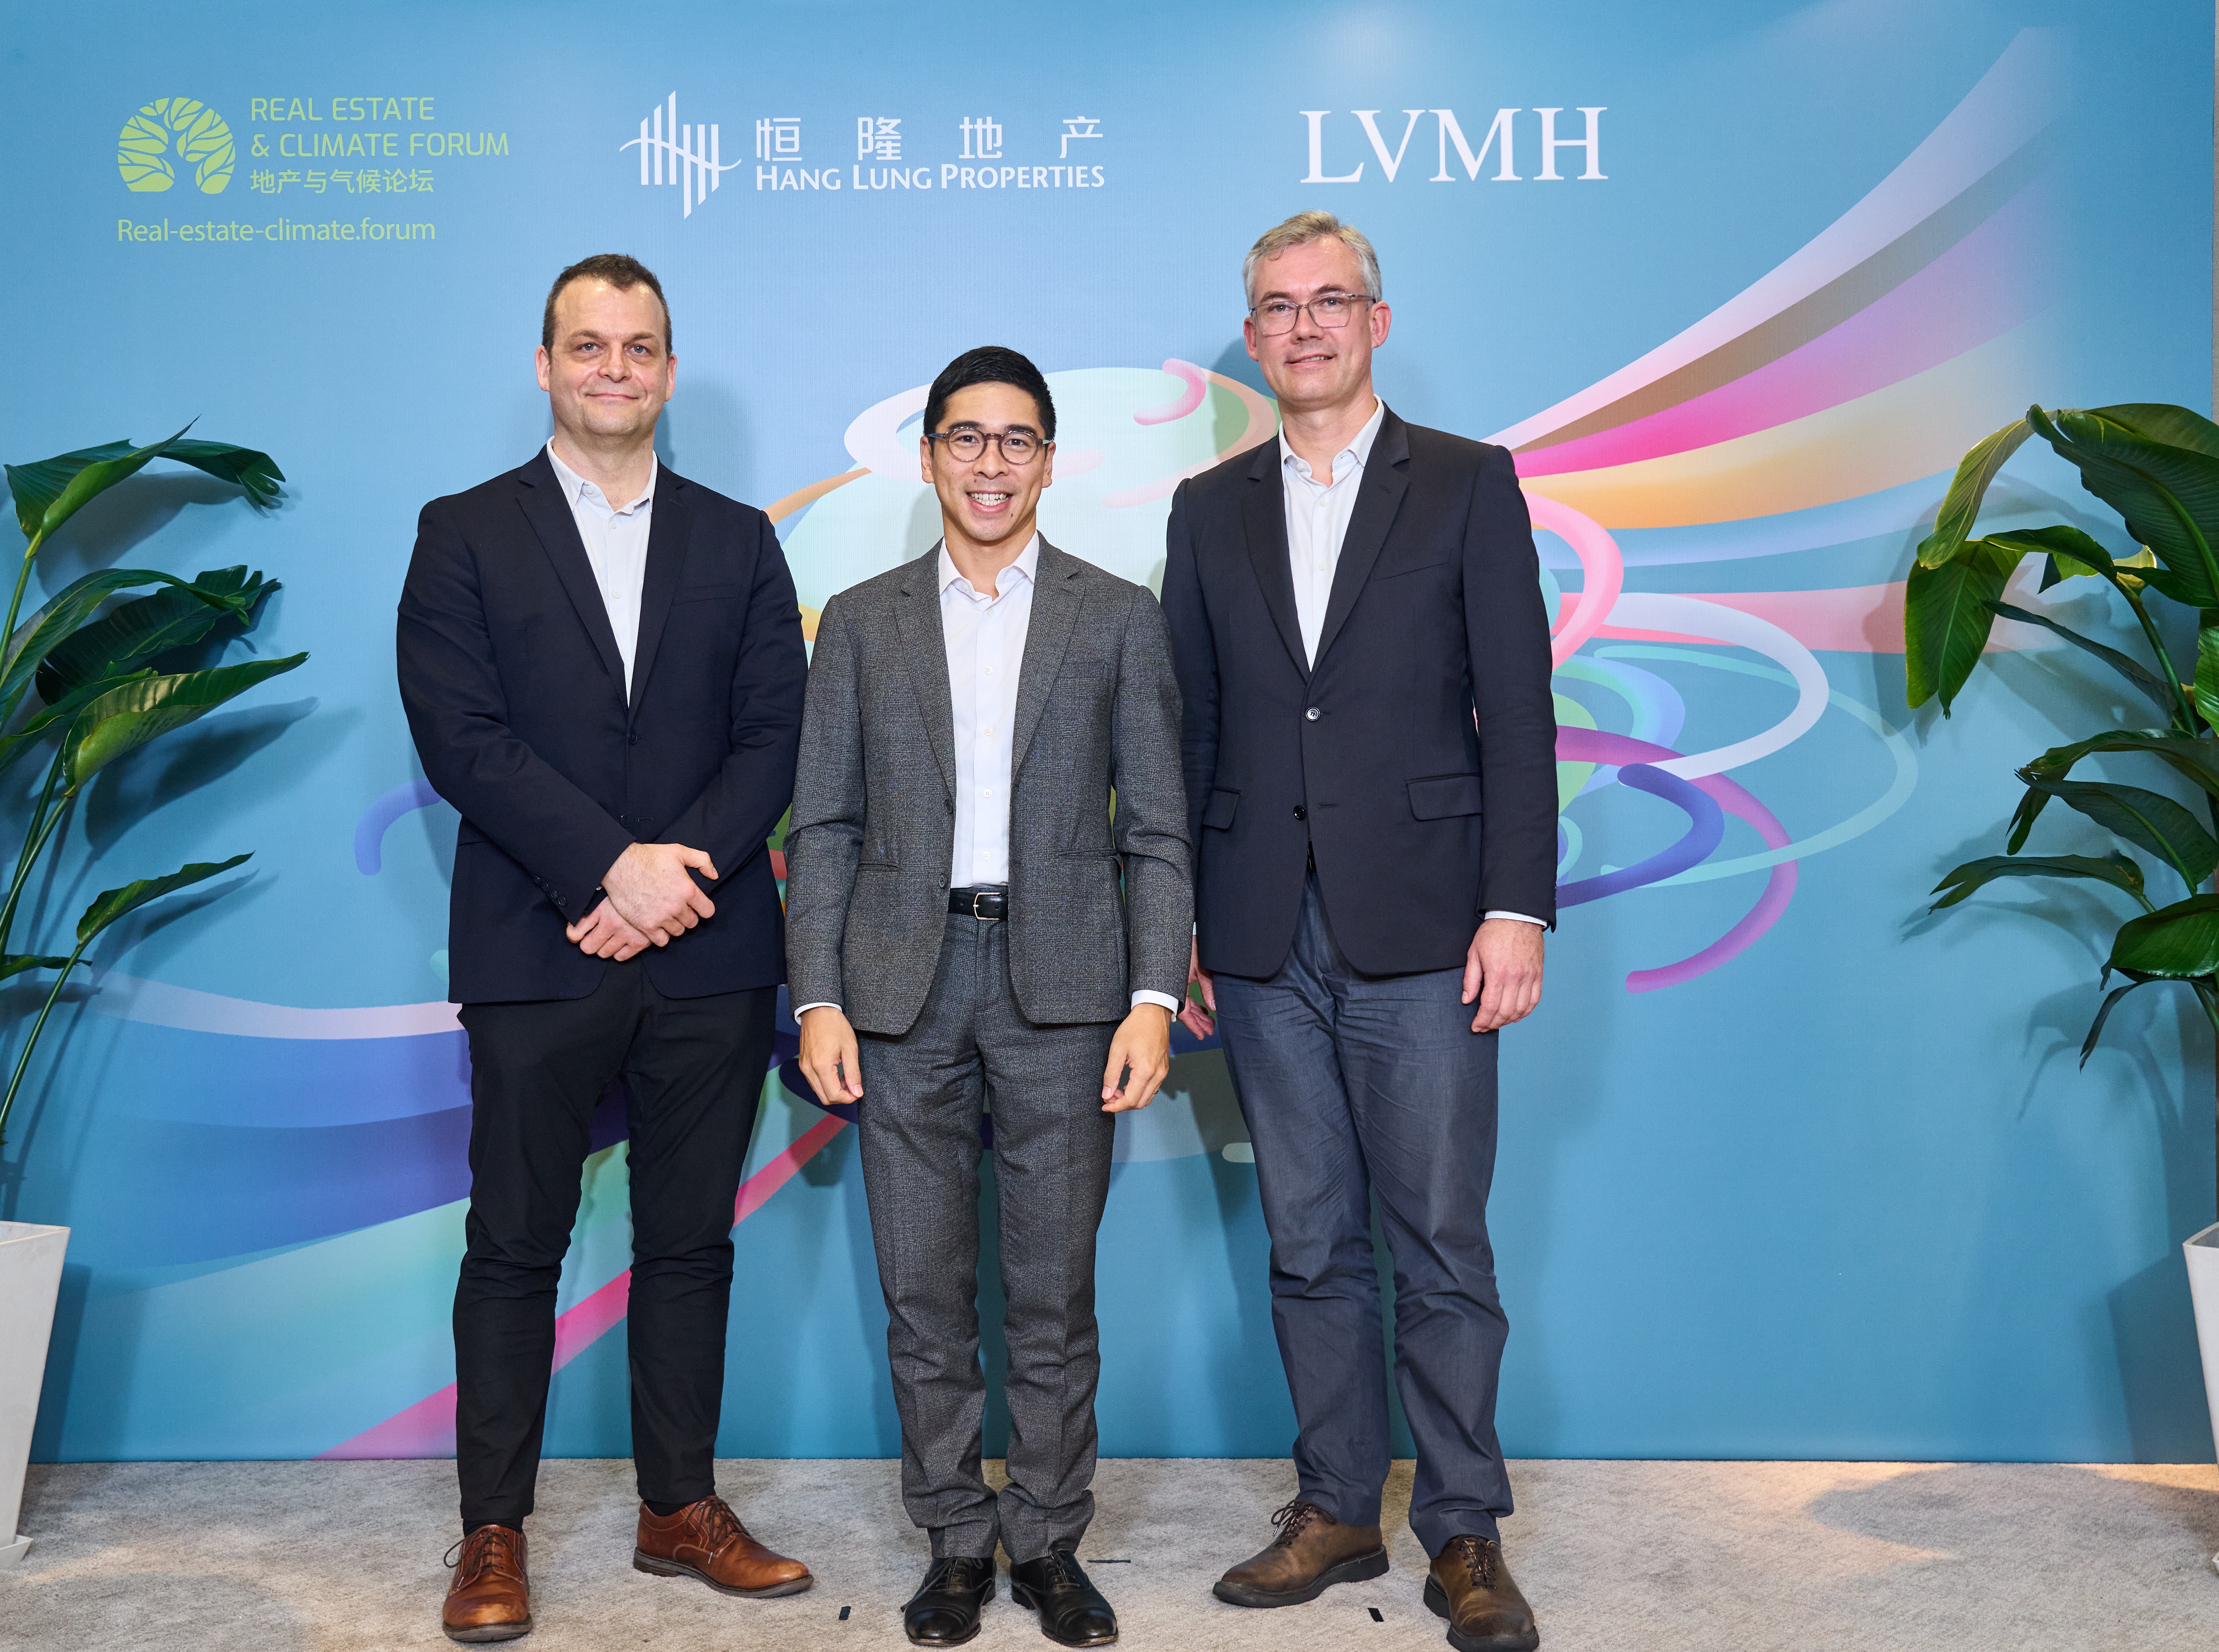 LVMH集团大中华区总裁吴越先生于上海举办的地产与气候论坛上欢迎革新领袖及其他参加者出席